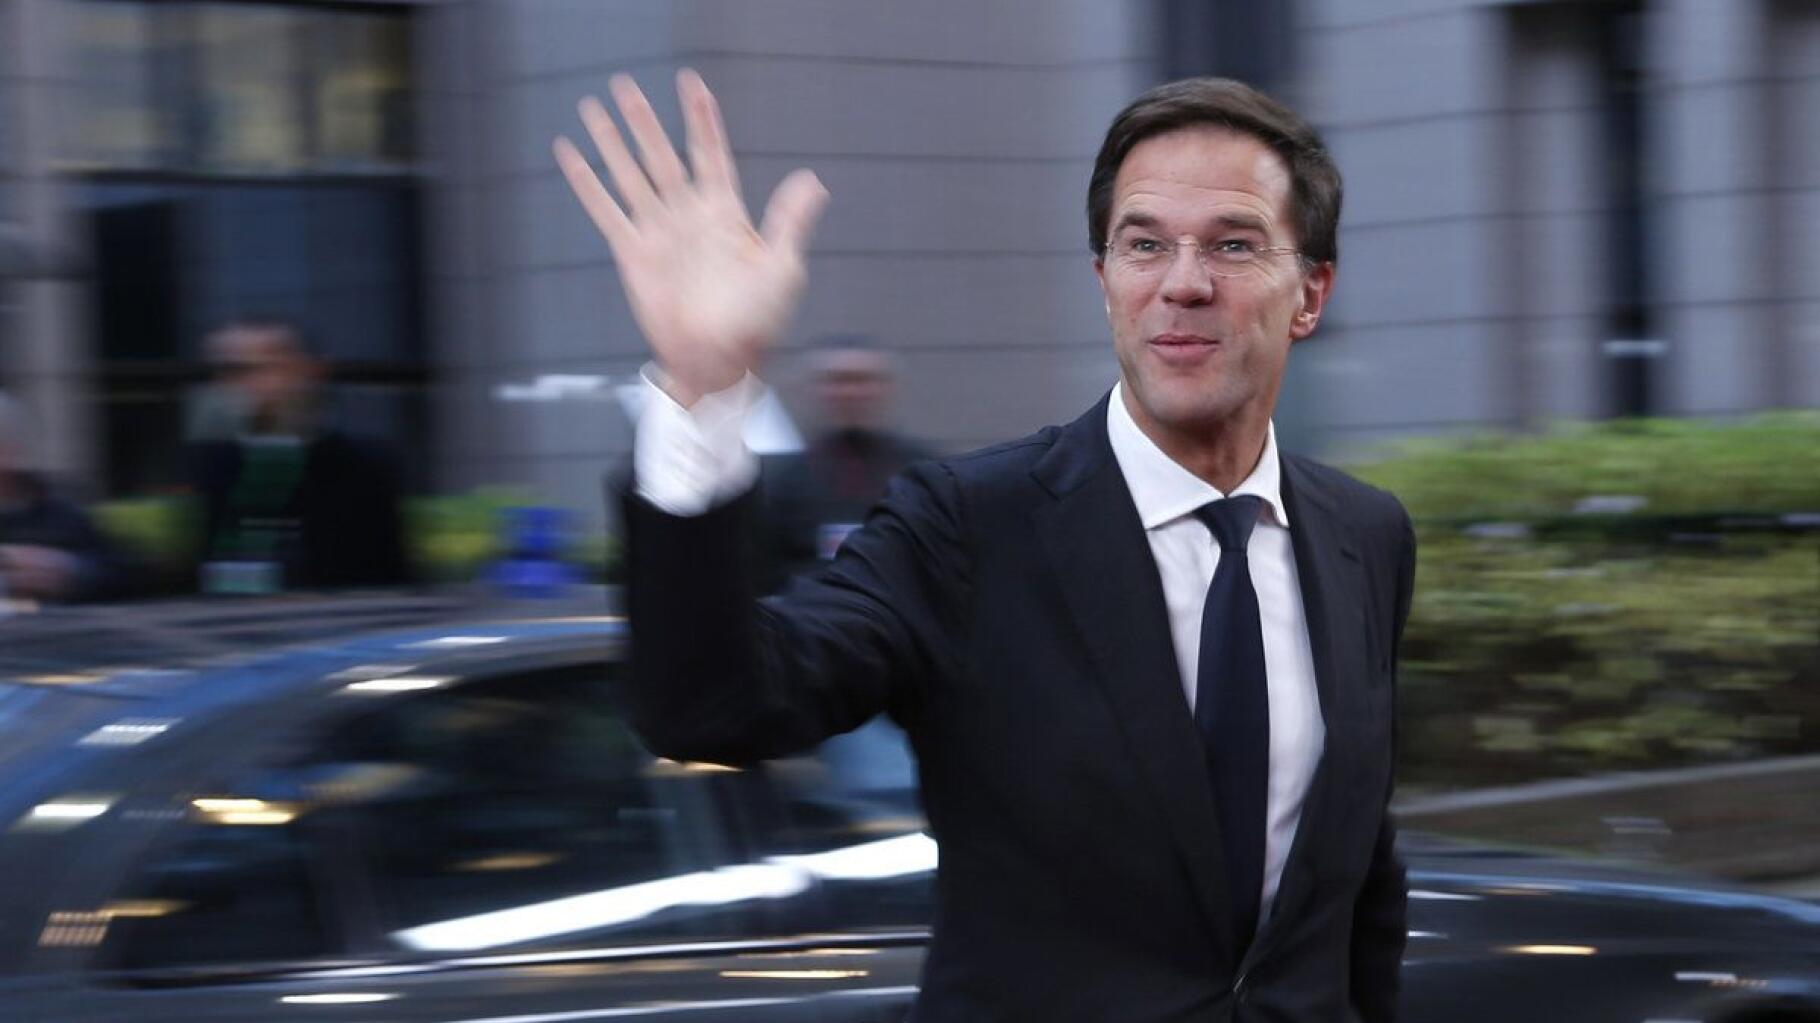 In Nederland historische parlementsverkiezingen na het afzetten van Mark Rutte, die sinds 2010 aan de macht is